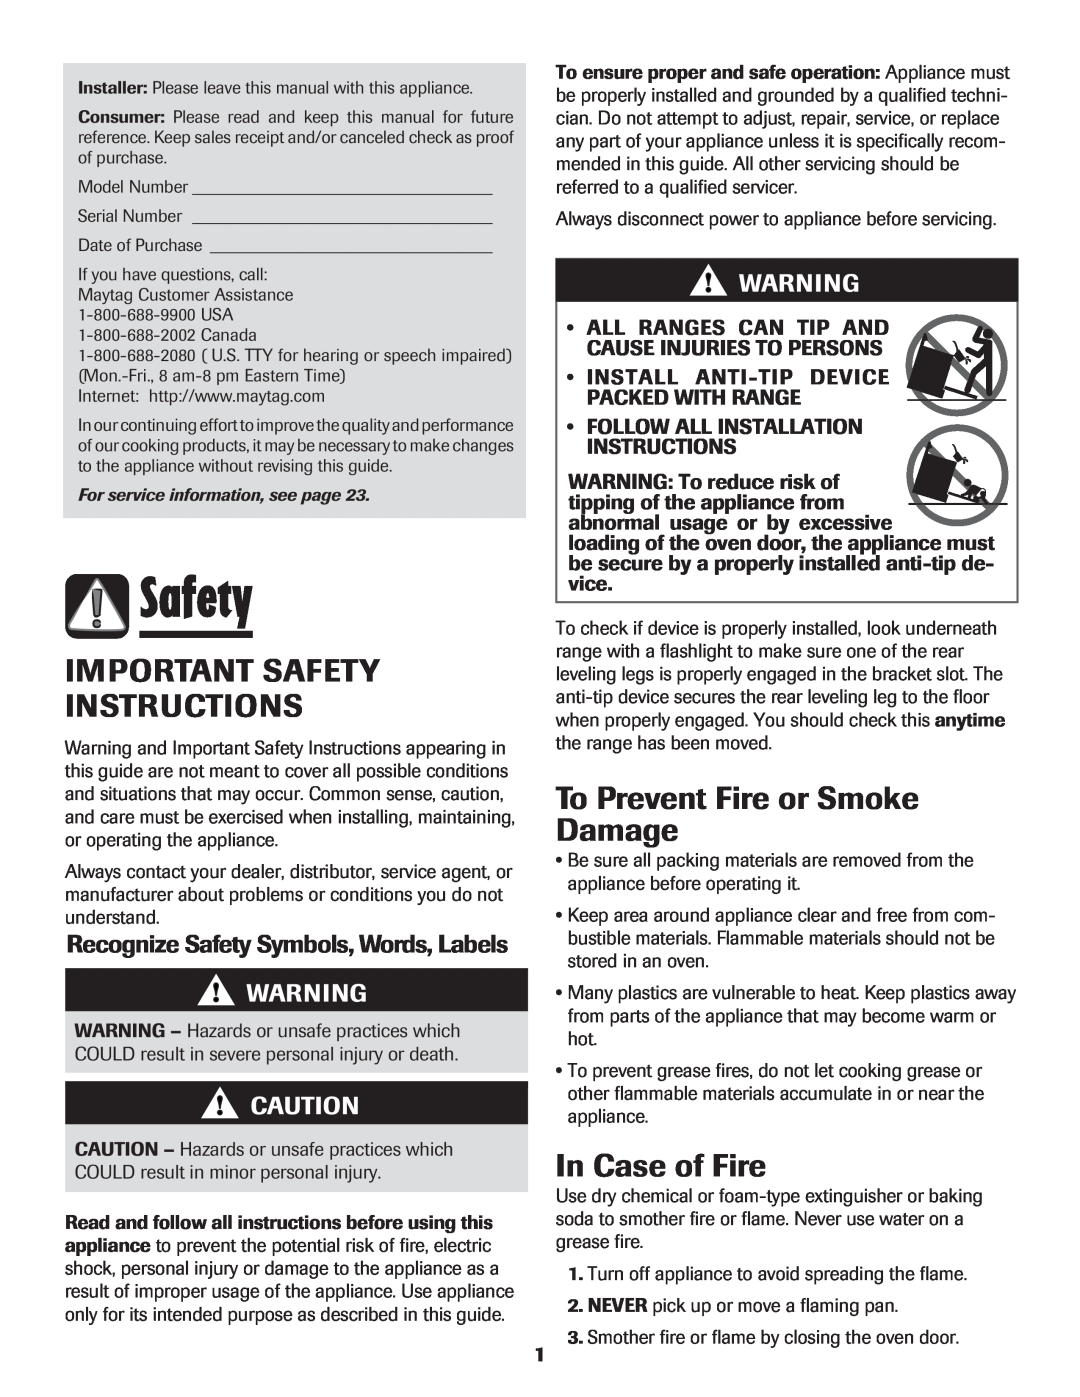 Maytag AGR5735QDB, 8113P450-60, AGR5735QDS, AGR5735QDQ, AGR5735QDW Important Safety Instructions, In Case of Fire 